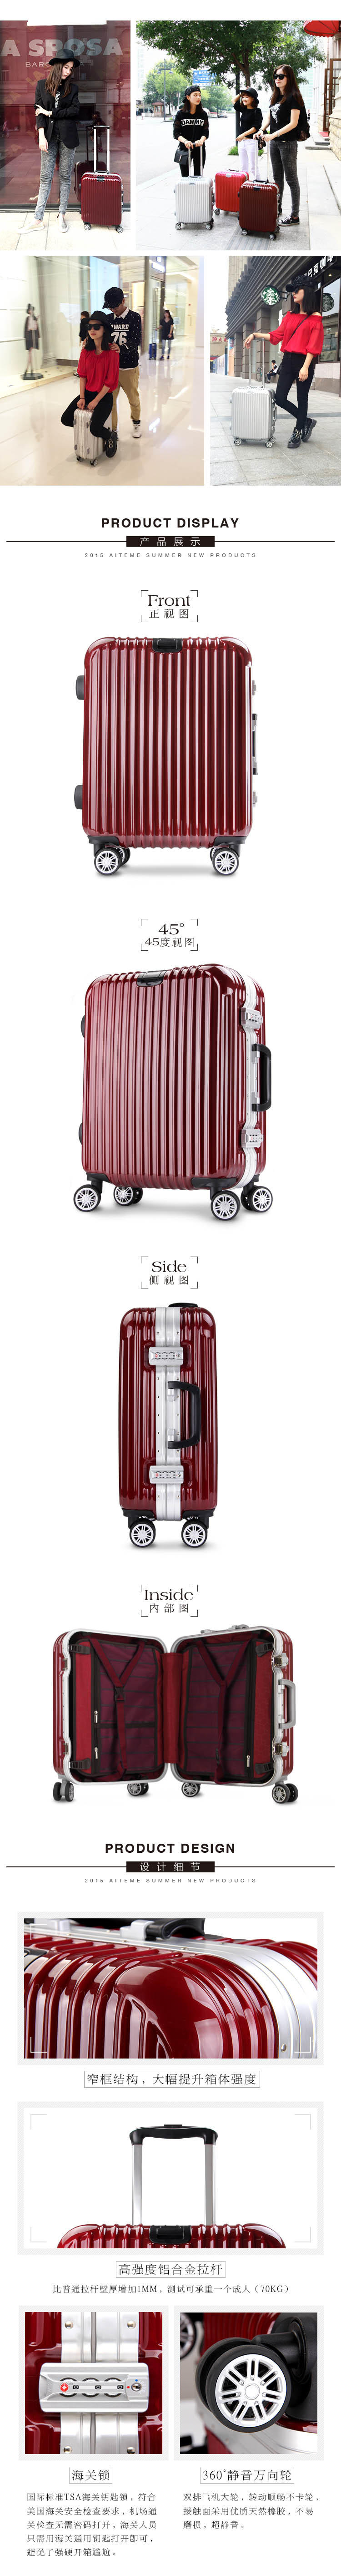 商务铝框密码拉杆箱万向轮女男行李登机箱韩版旅行箱28寸学生时尚潮流箱包箱子